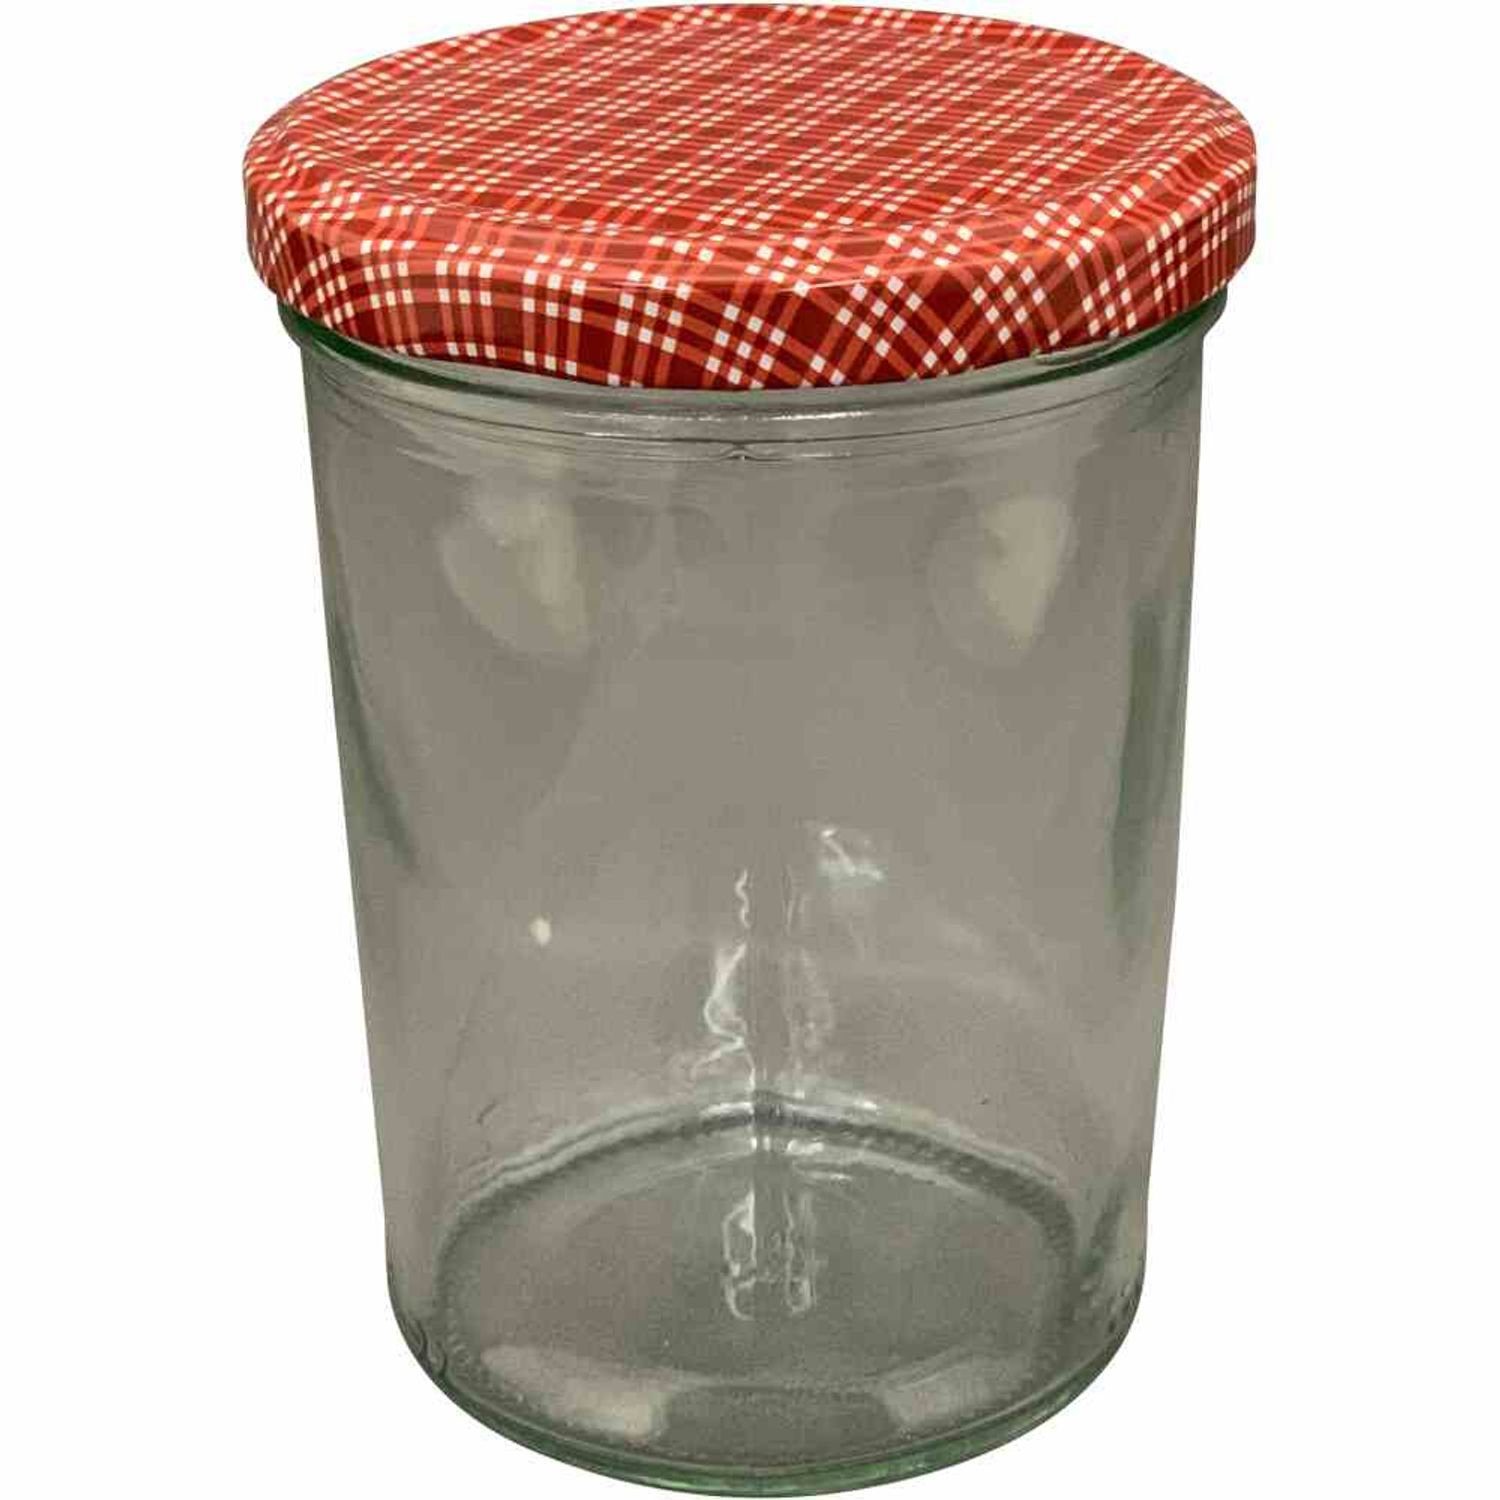 Siena Home Vorratsdose Sturz-Glas "Cucinare" 1TO440 rot/weiß, TwistOff 440 ml, Glas